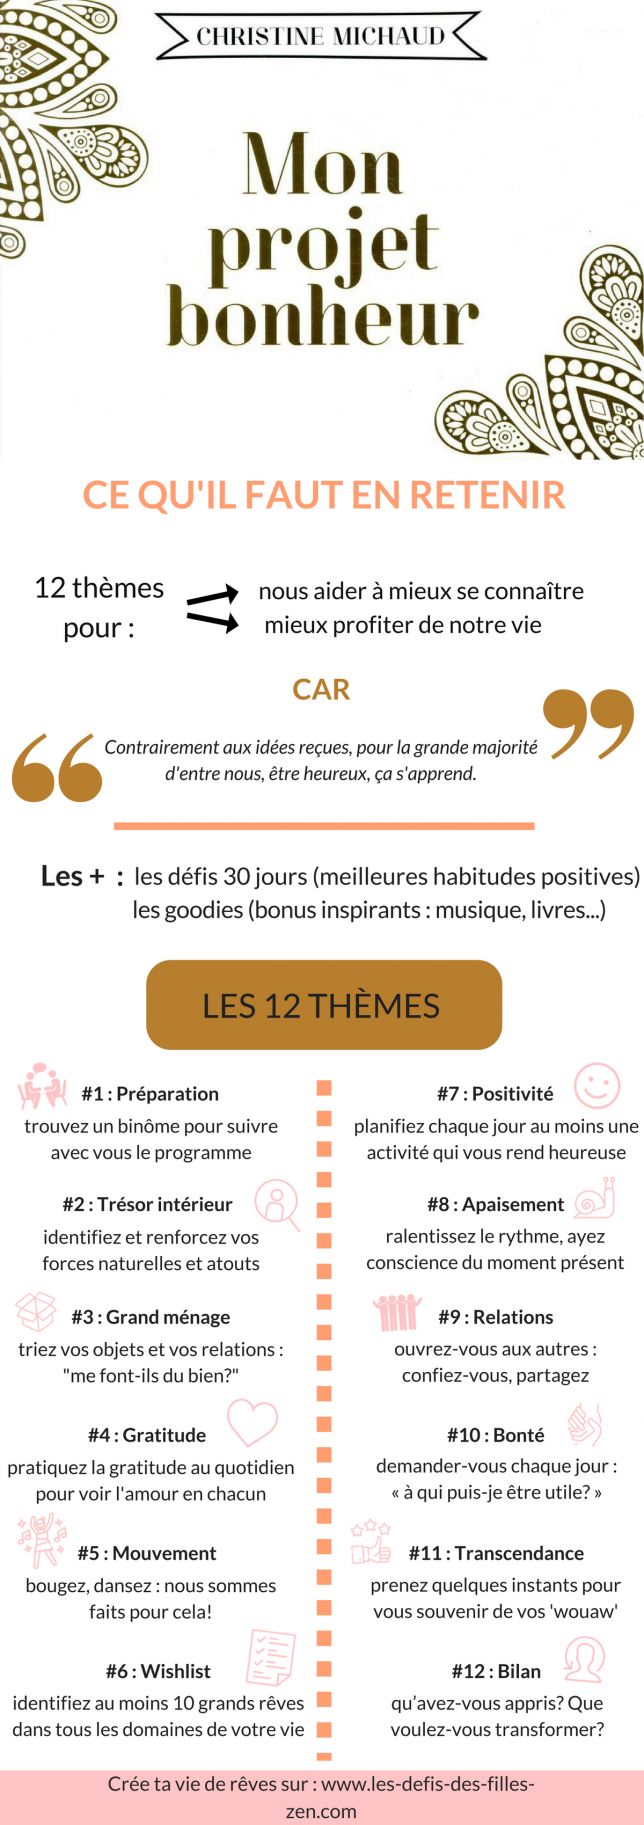 1556170321_890_Psychology-Infographic-Mon-projet-bonheur-de-Christine-Michaud Psychology Infographic : Mon projet bonheur de Christine Michaud